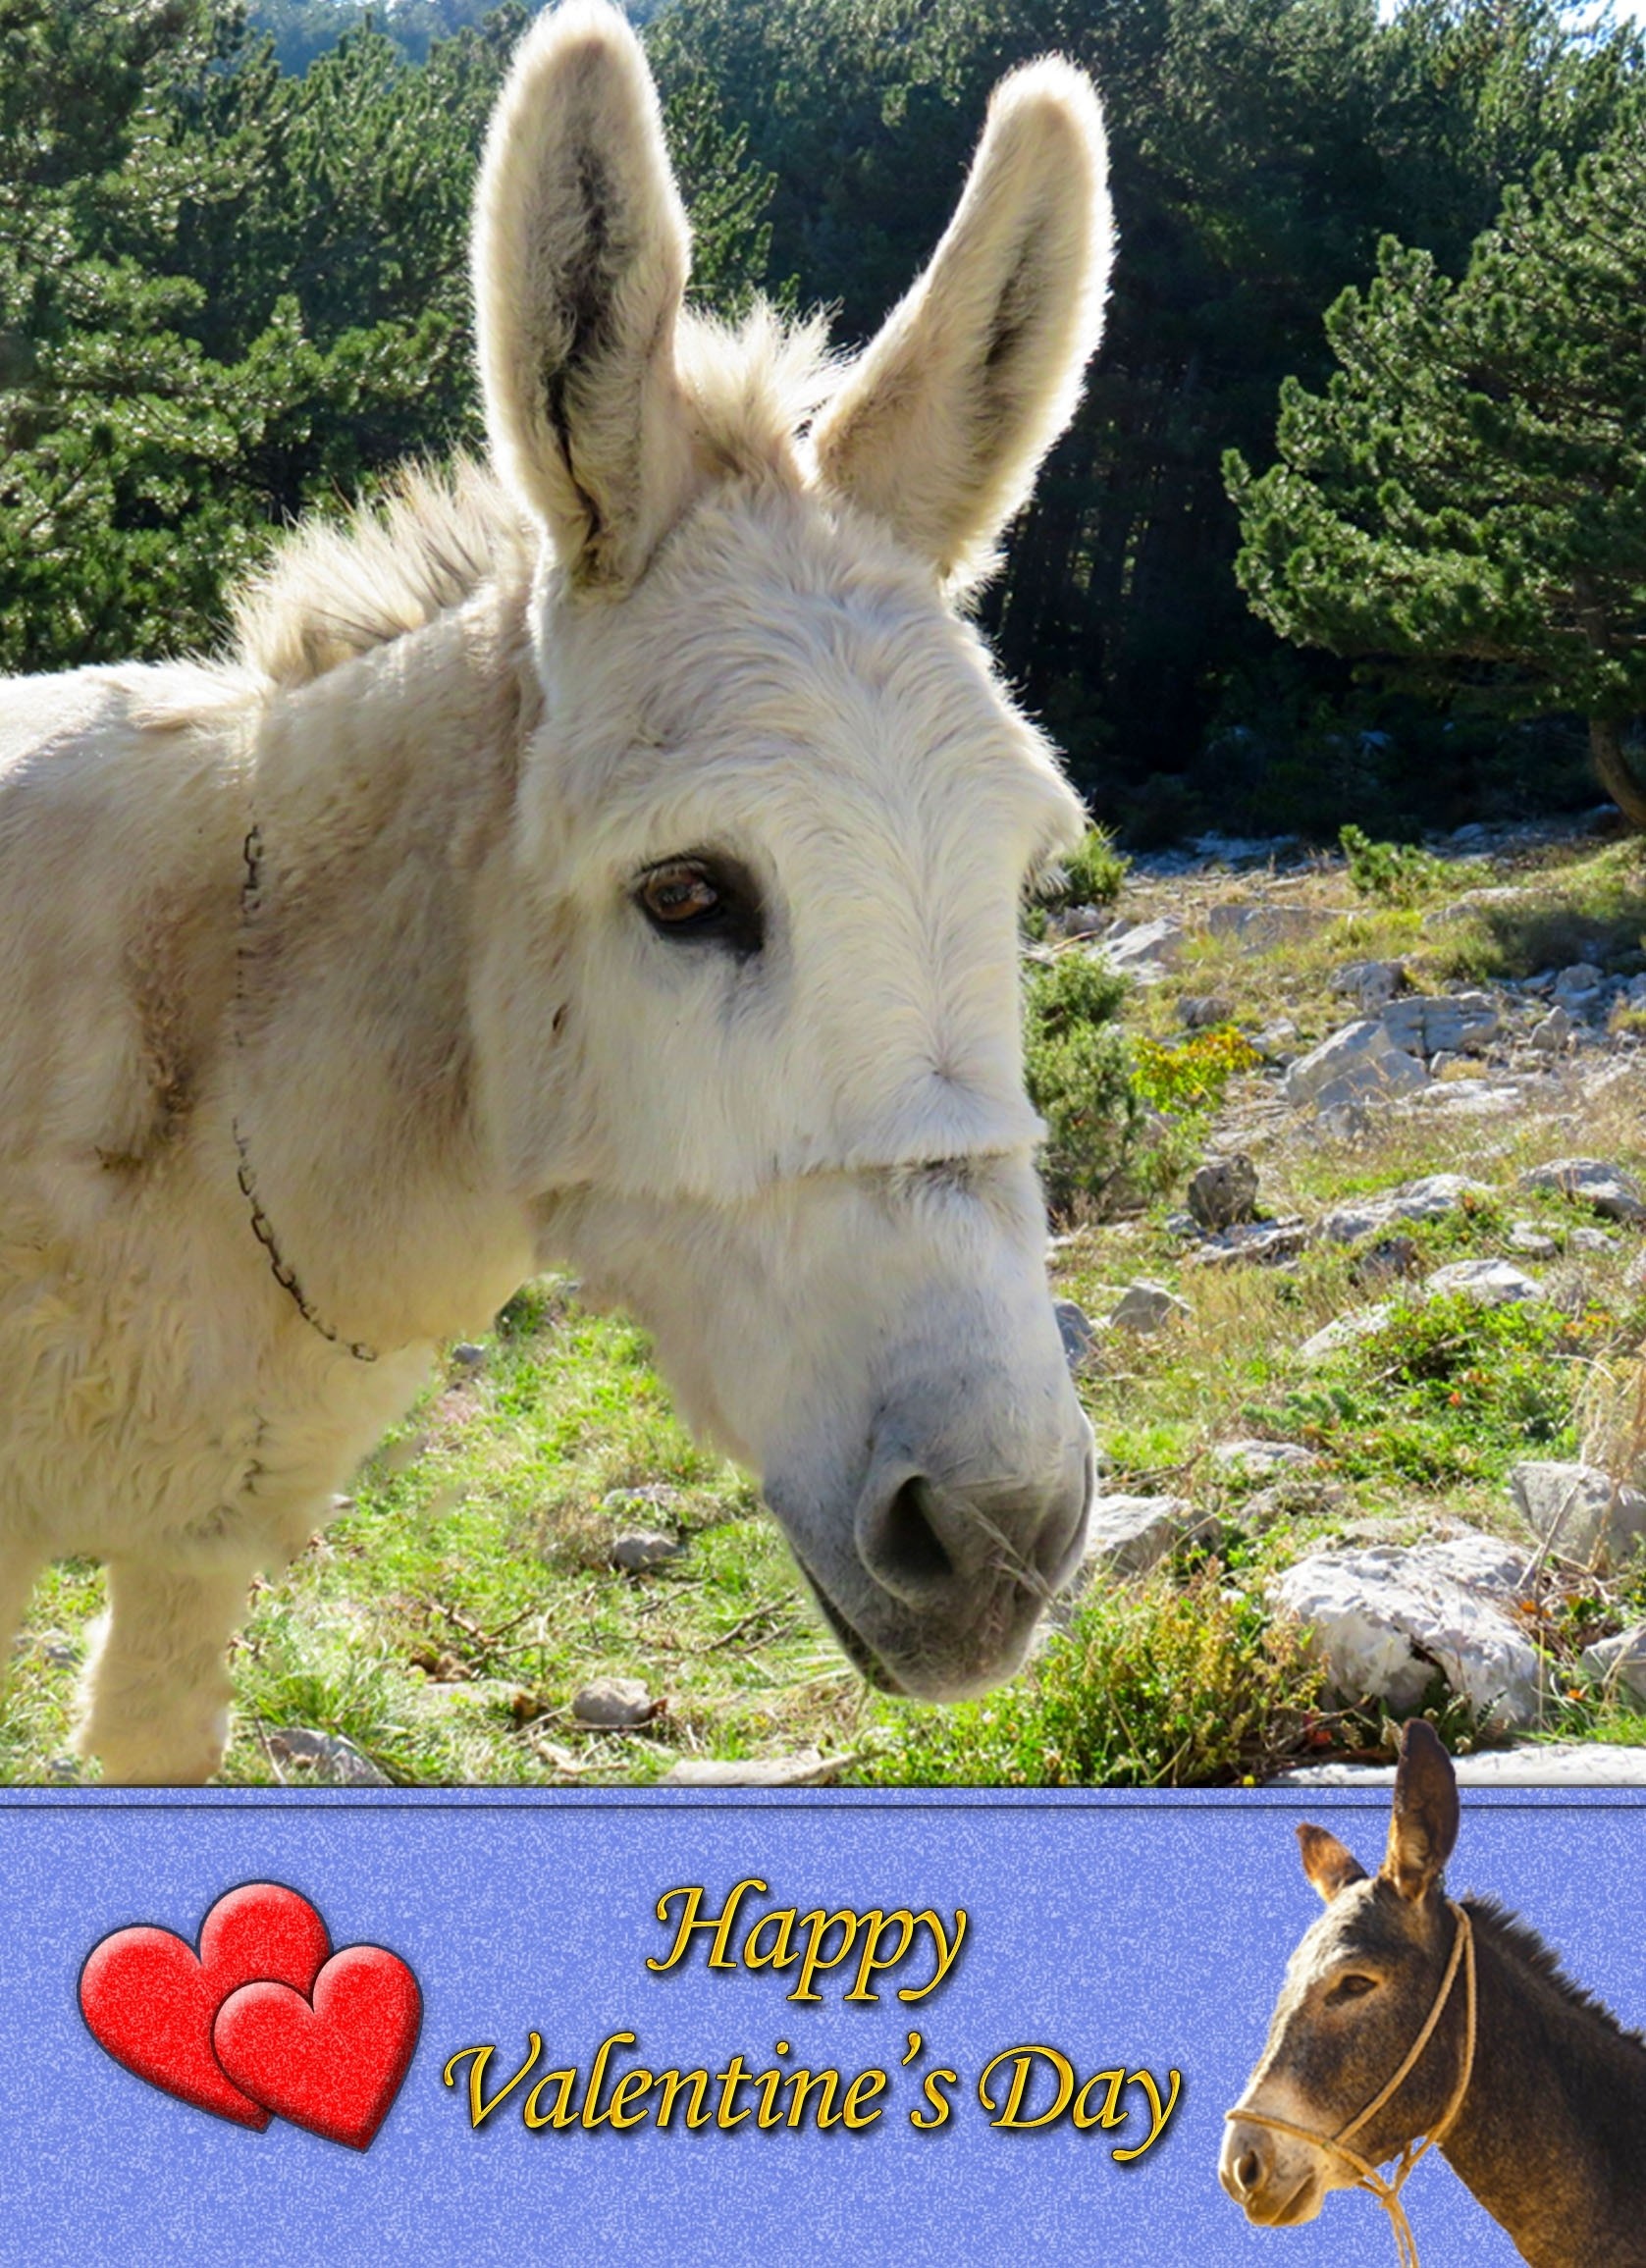 Donkey Valentine's Day Card